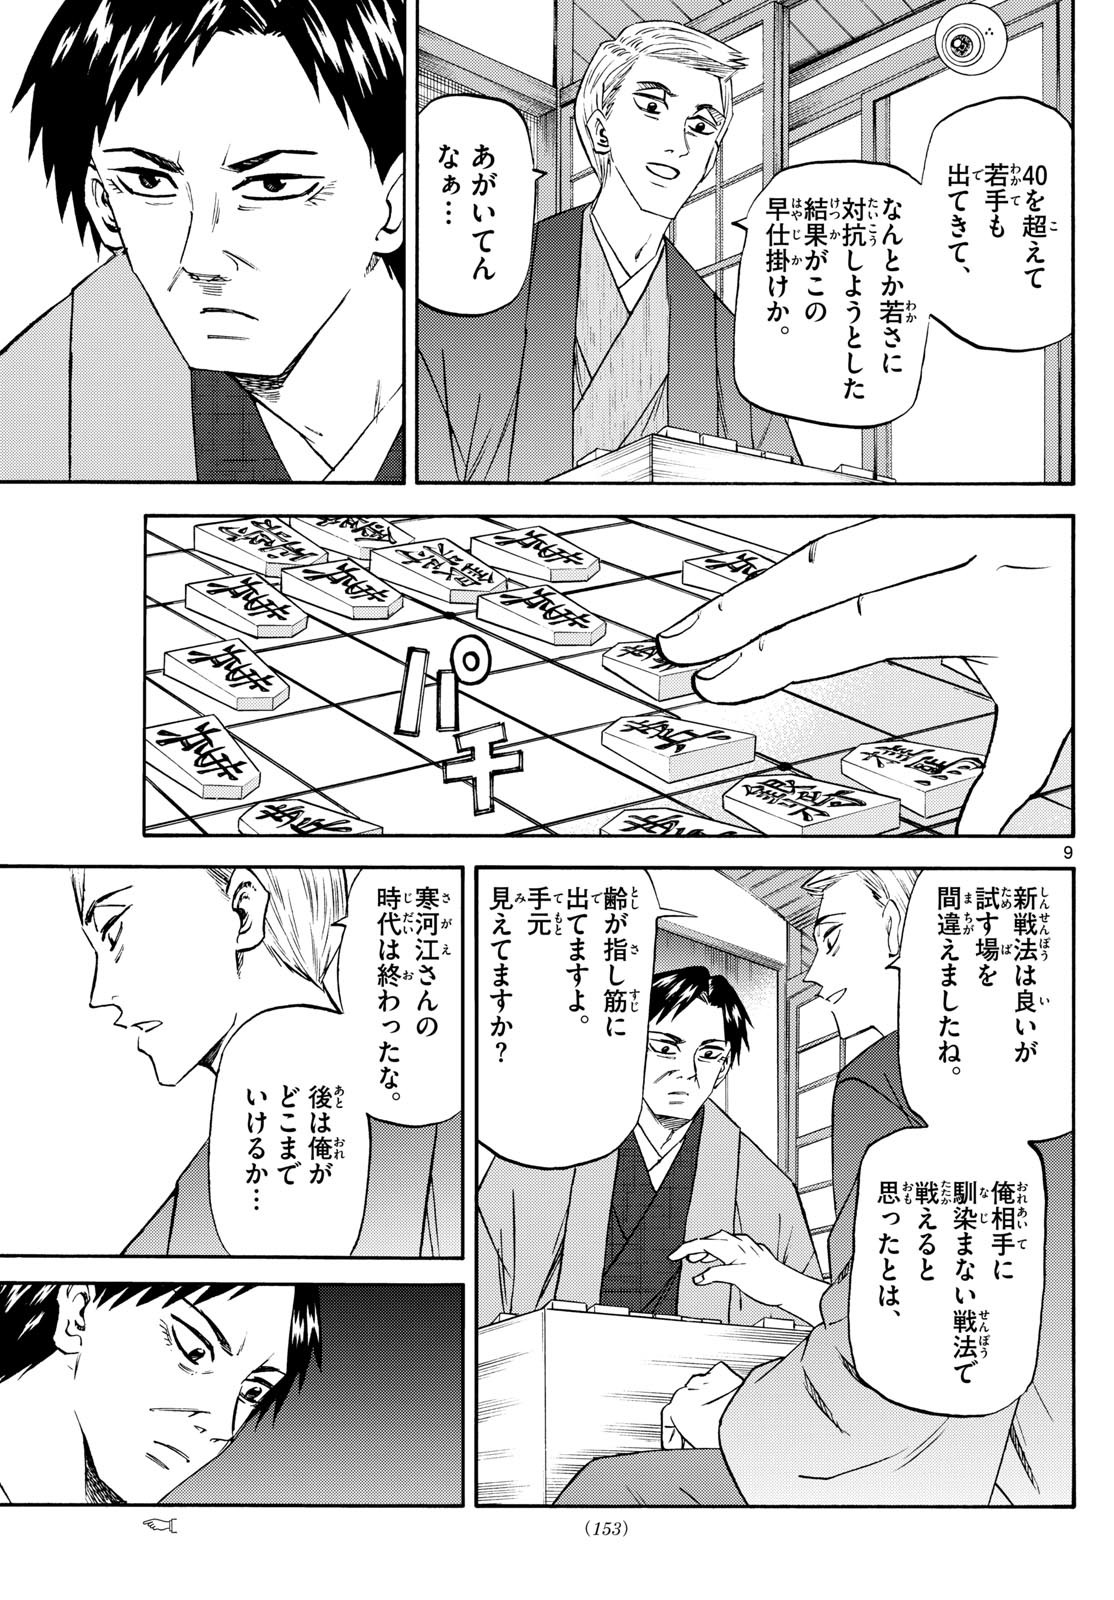 Ryu-to-Ichigo - Chapter 195 - Page 9